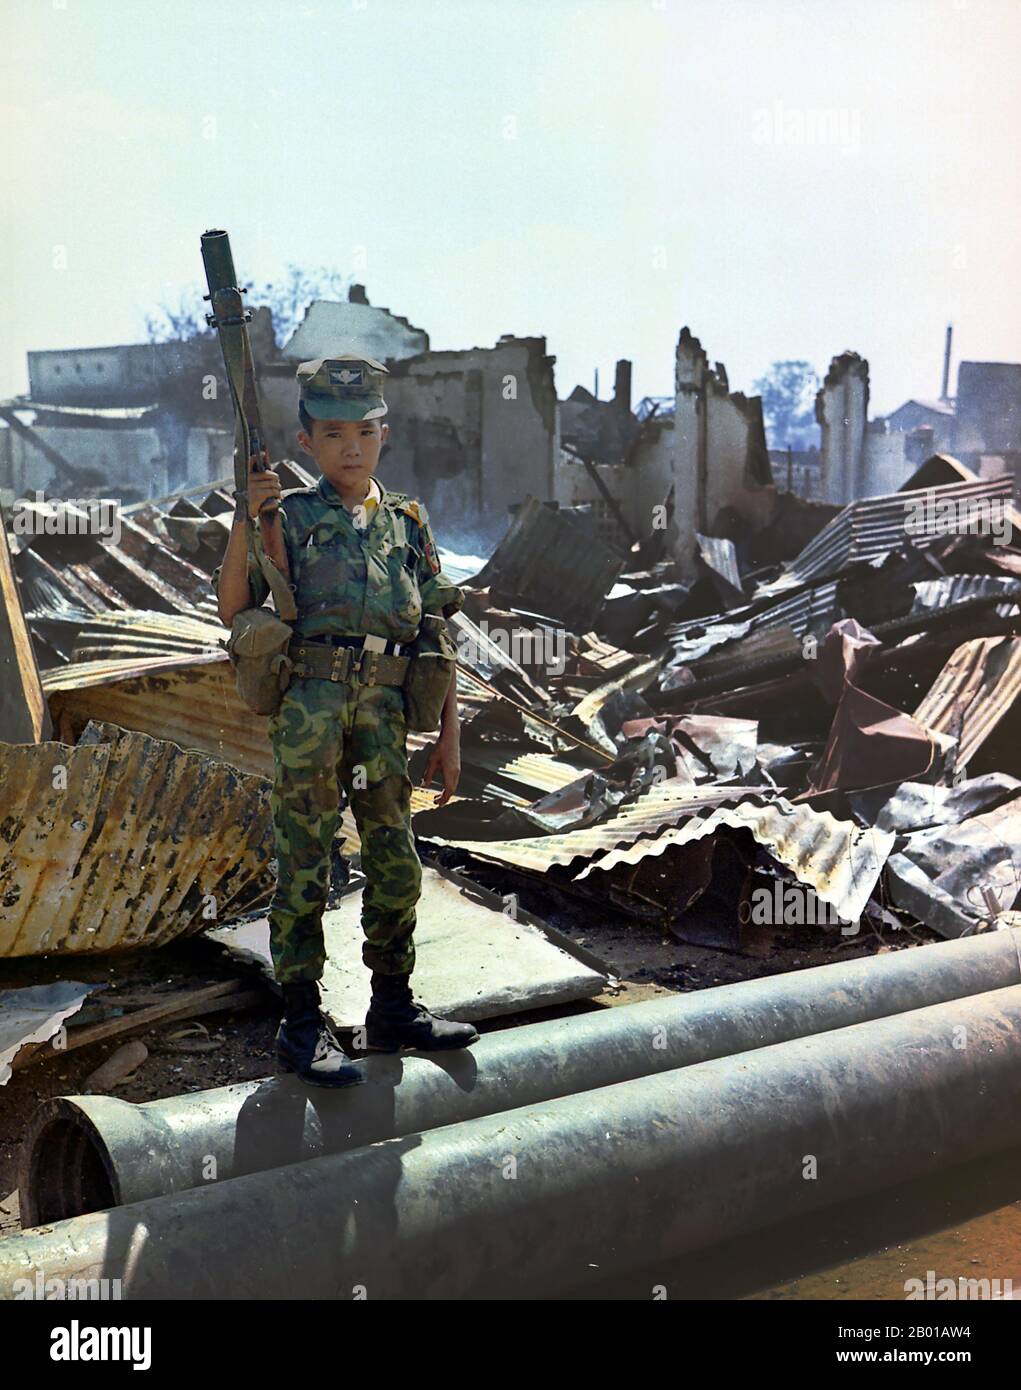 Vietnam: Ein zwölfjähriger Kindersoldat in der Uniform der Armee der Republik Vietnam (ARVN), Tan Son Nhut Airport, Saigon, 7. Mai 1968. Ein zwölfjähriger vietnamesischer ARVN Airborne-Trooper, der von der Airborne Division "adoptiert" worden war und einen M-79-Granatwerfer im Besitz hatte. Das Bild wurde während eines Sweeps einer Airborne Task Force Unit durch das verwüstete Gebiet rund um den französischen Nationalfriedhof auf der Plantation Road nach einem Tag langen Kampf dort aufgenommen. Stockfoto